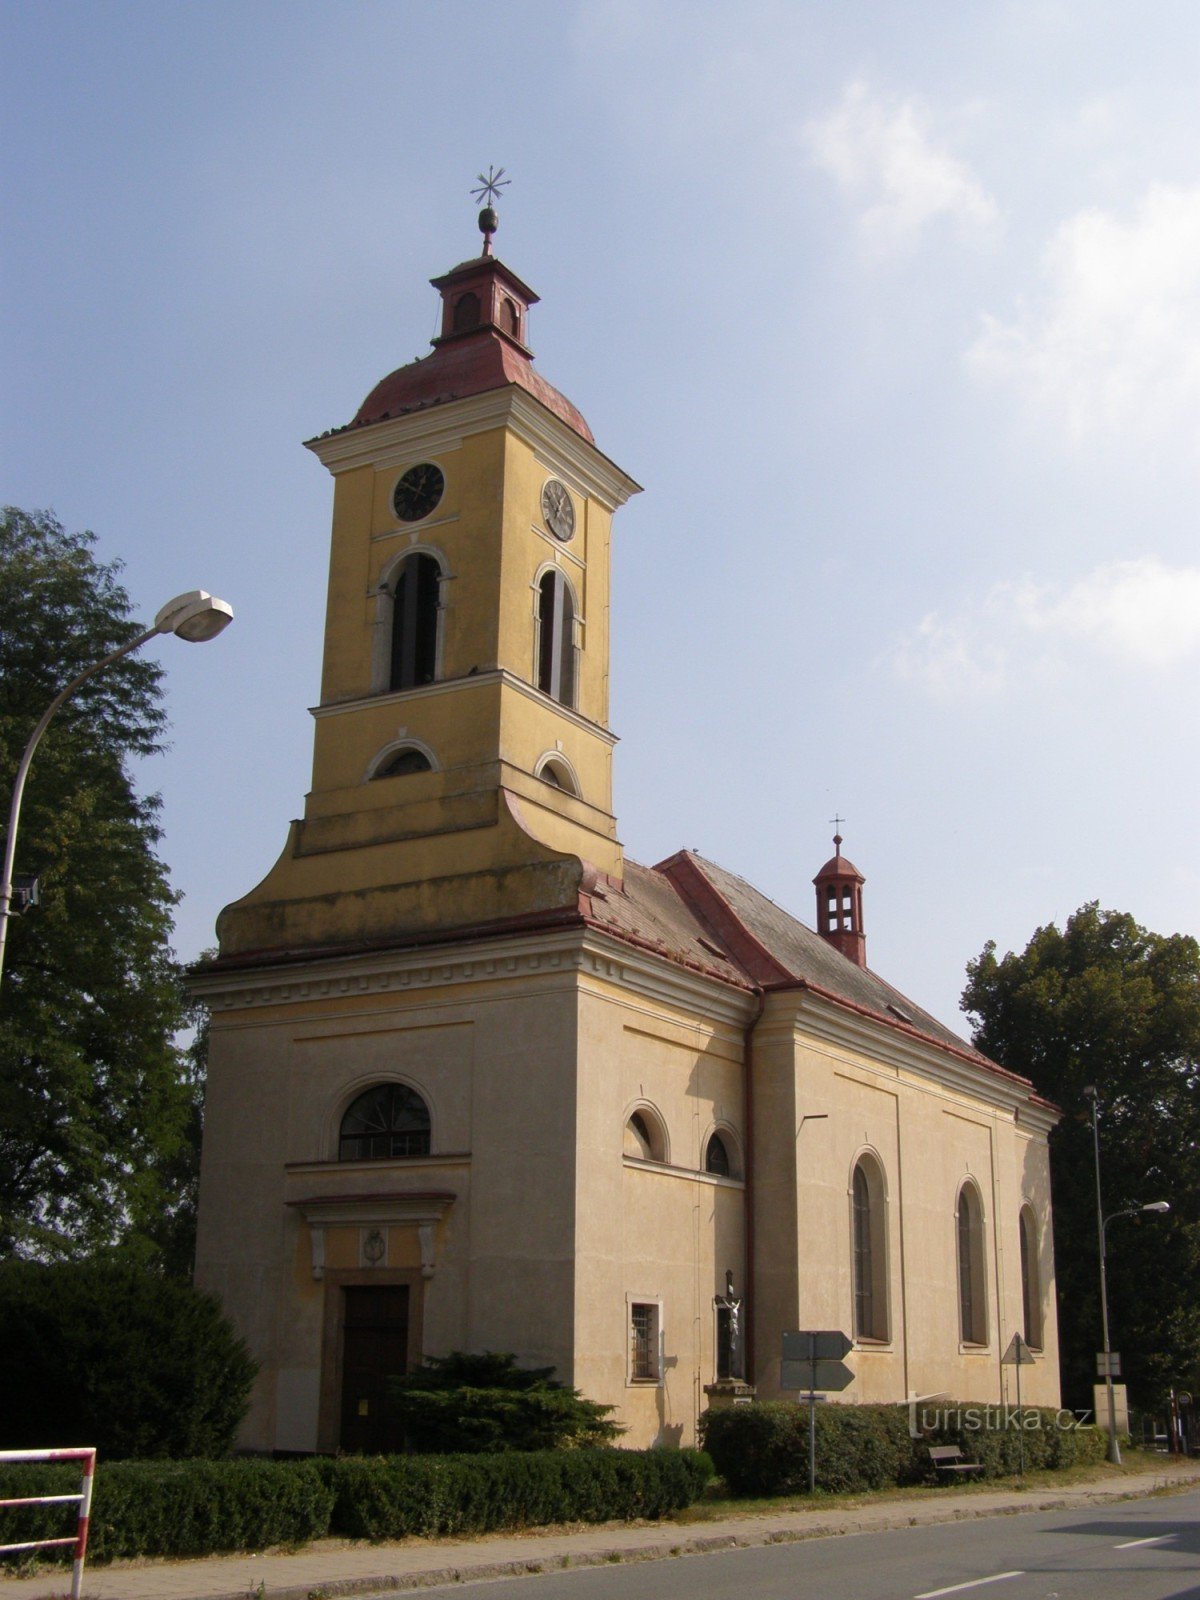 Štězery - 圣彼得教堂标记